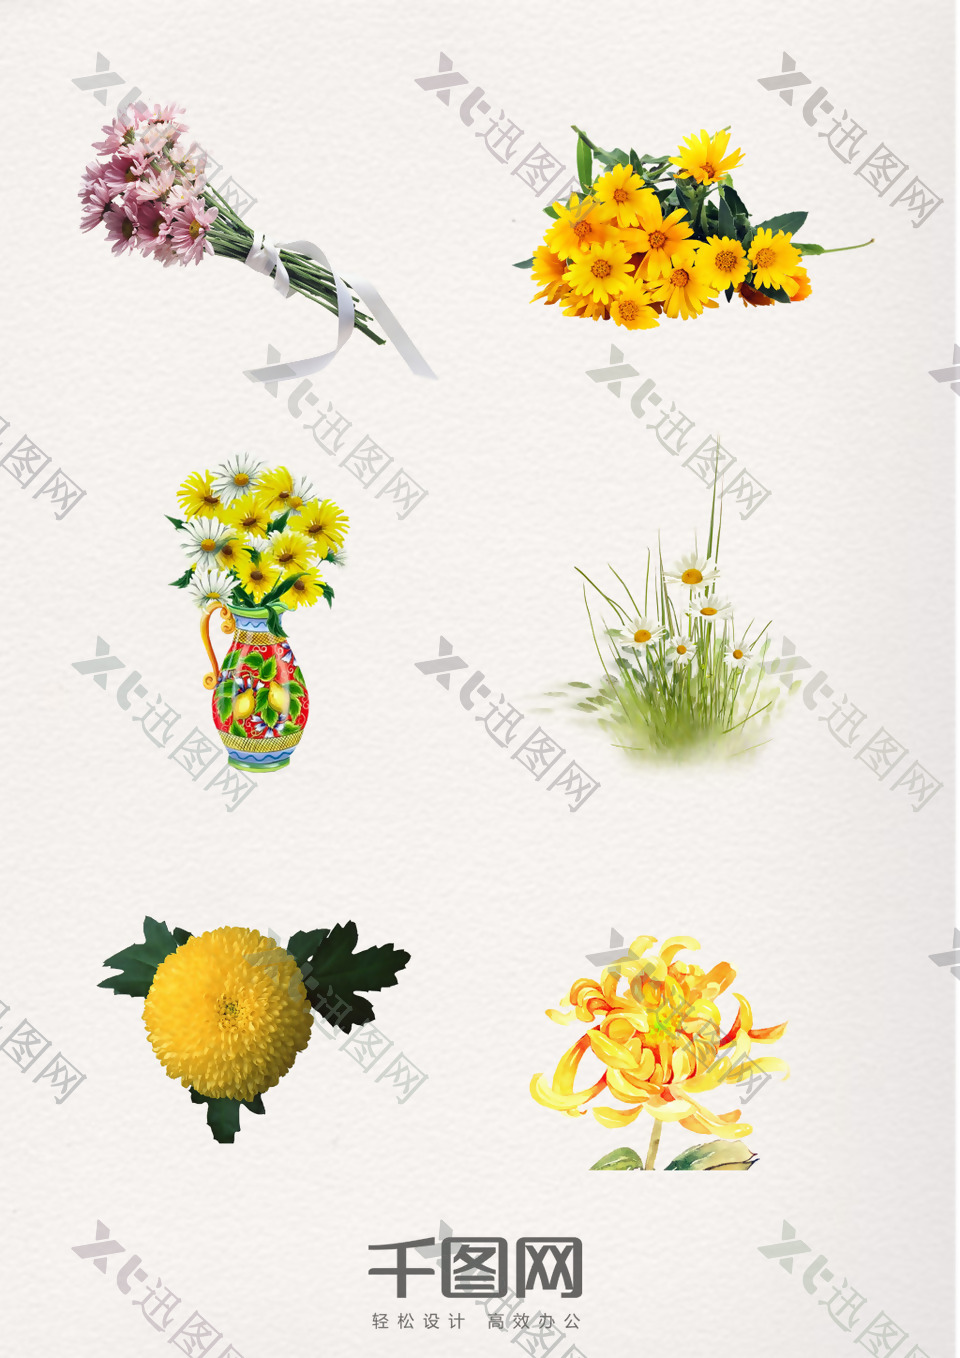 中国重阳节手绘菊花装饰元素